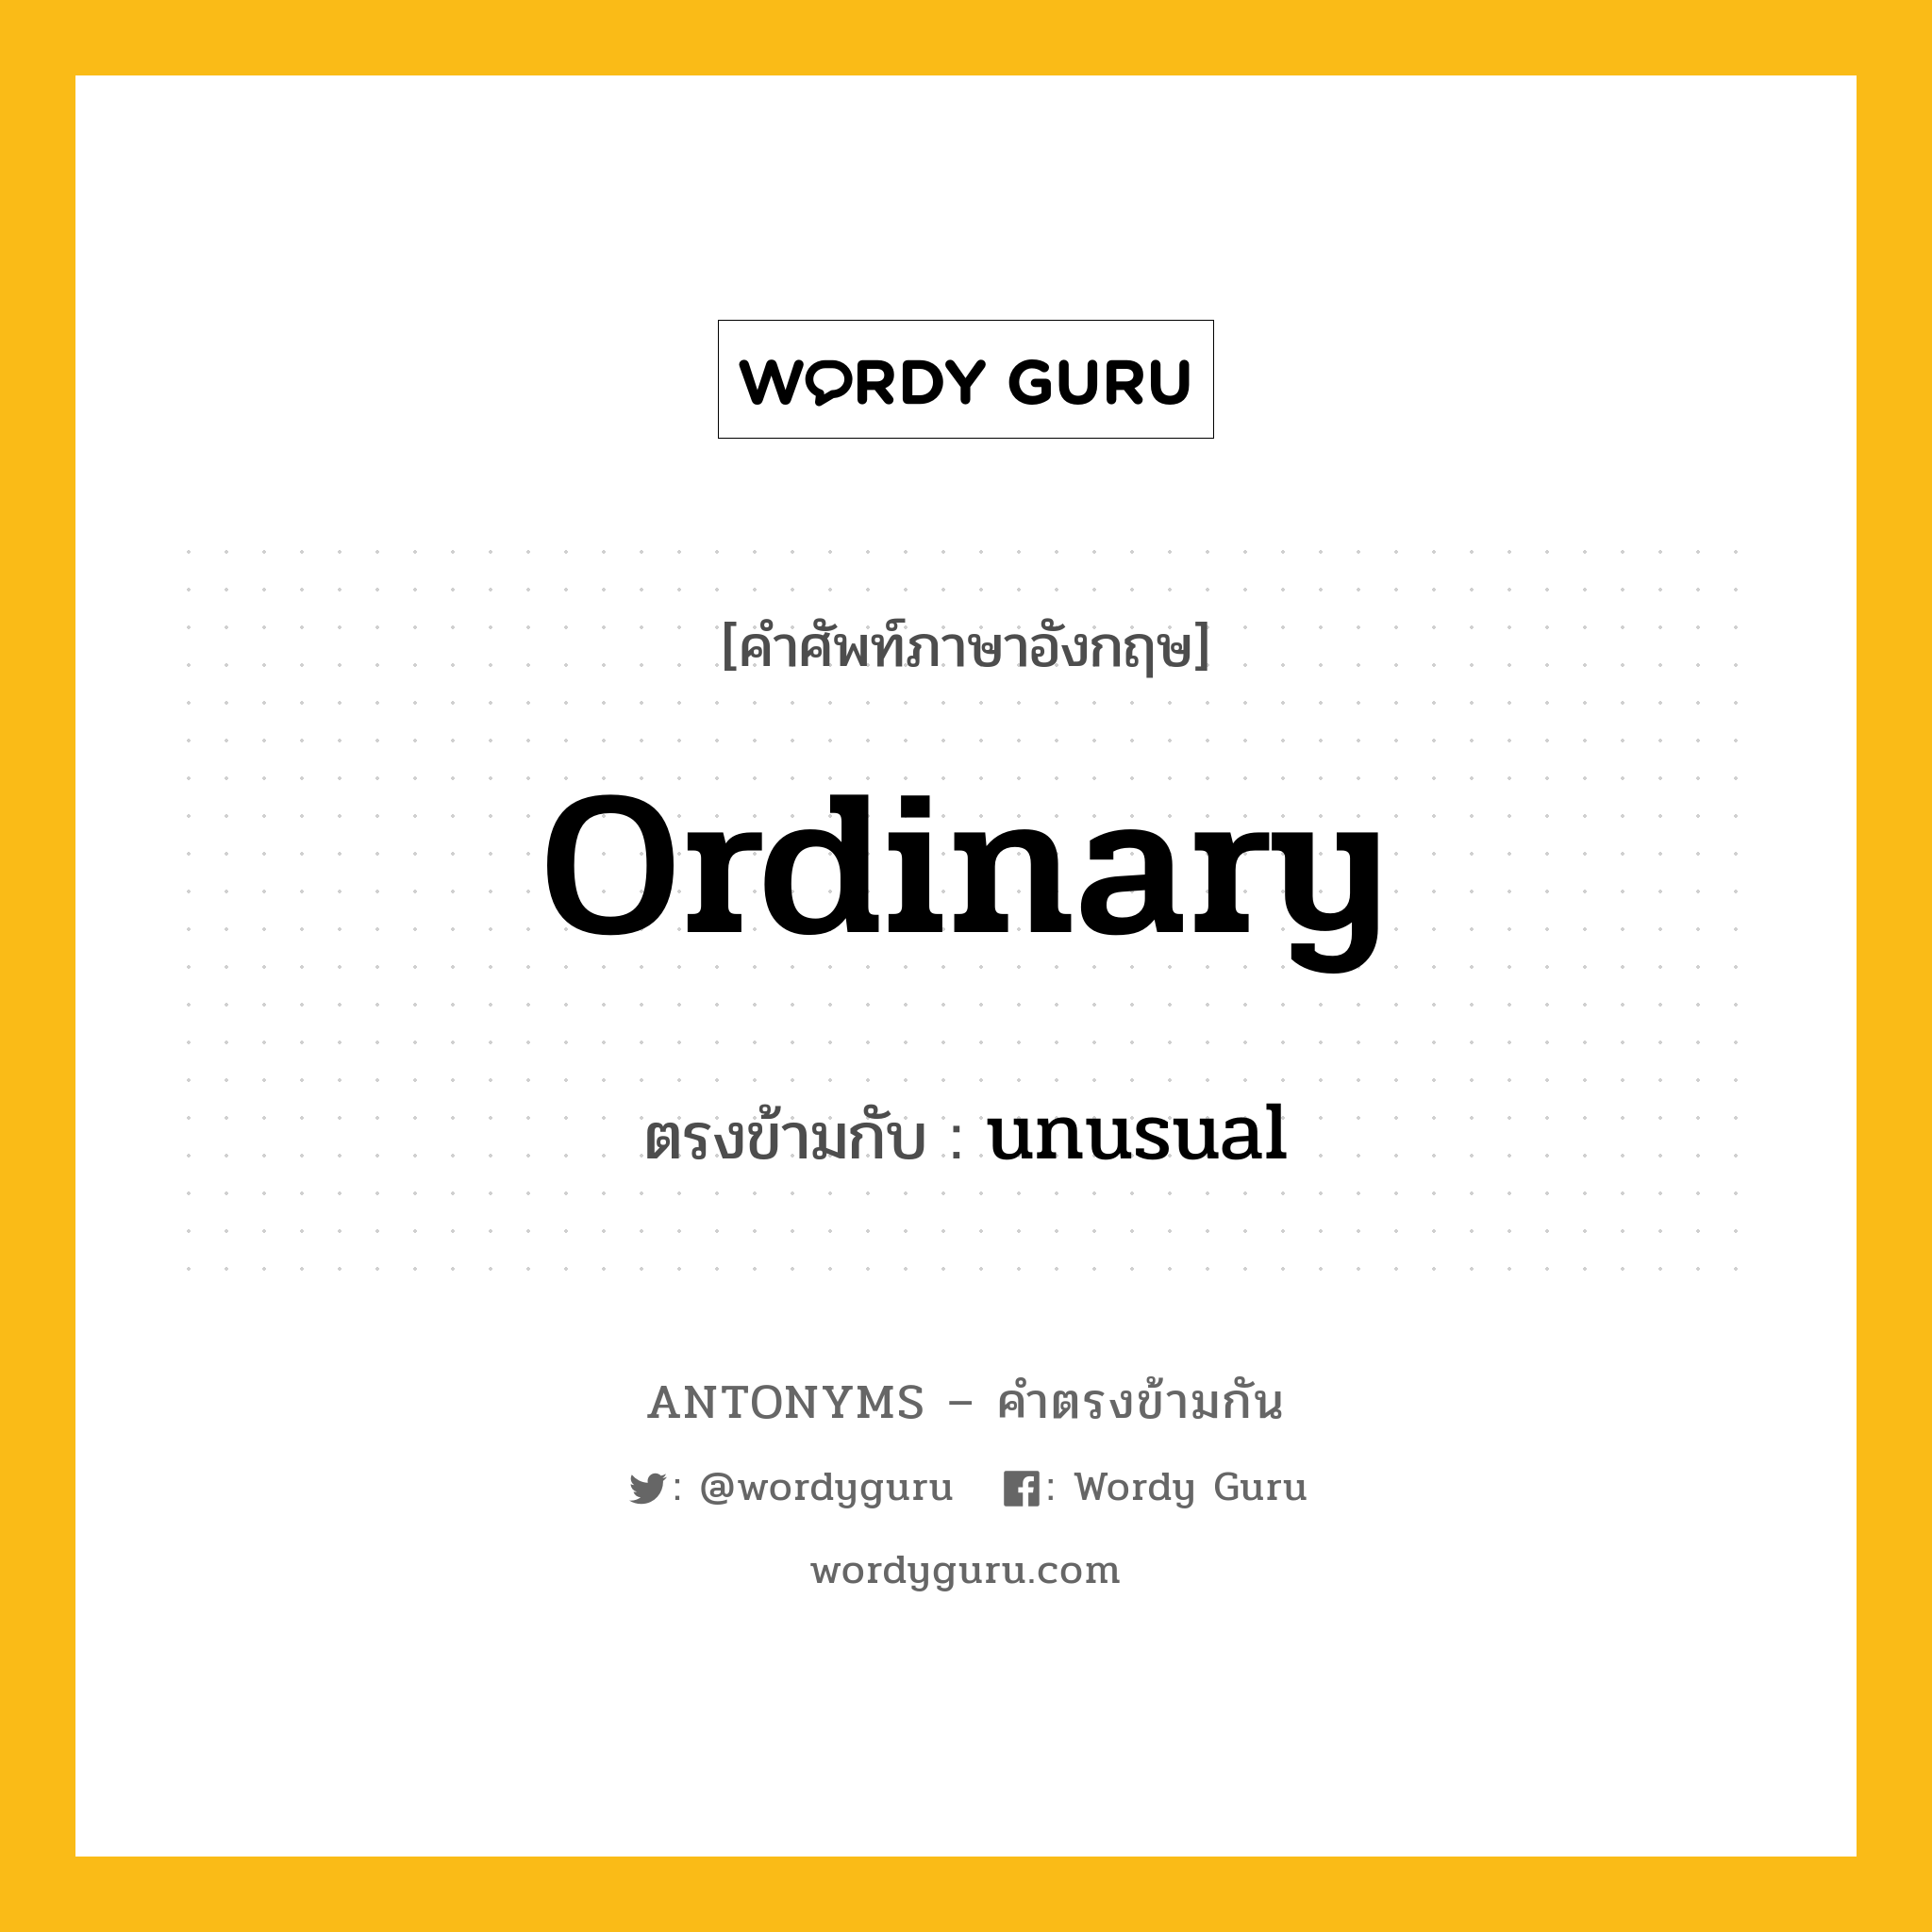 ordinary เป็นคำตรงข้ามกับคำไหนบ้าง?, คำศัพท์ภาษาอังกฤษ ordinary ตรงข้ามกับ unusual หมวด unusual